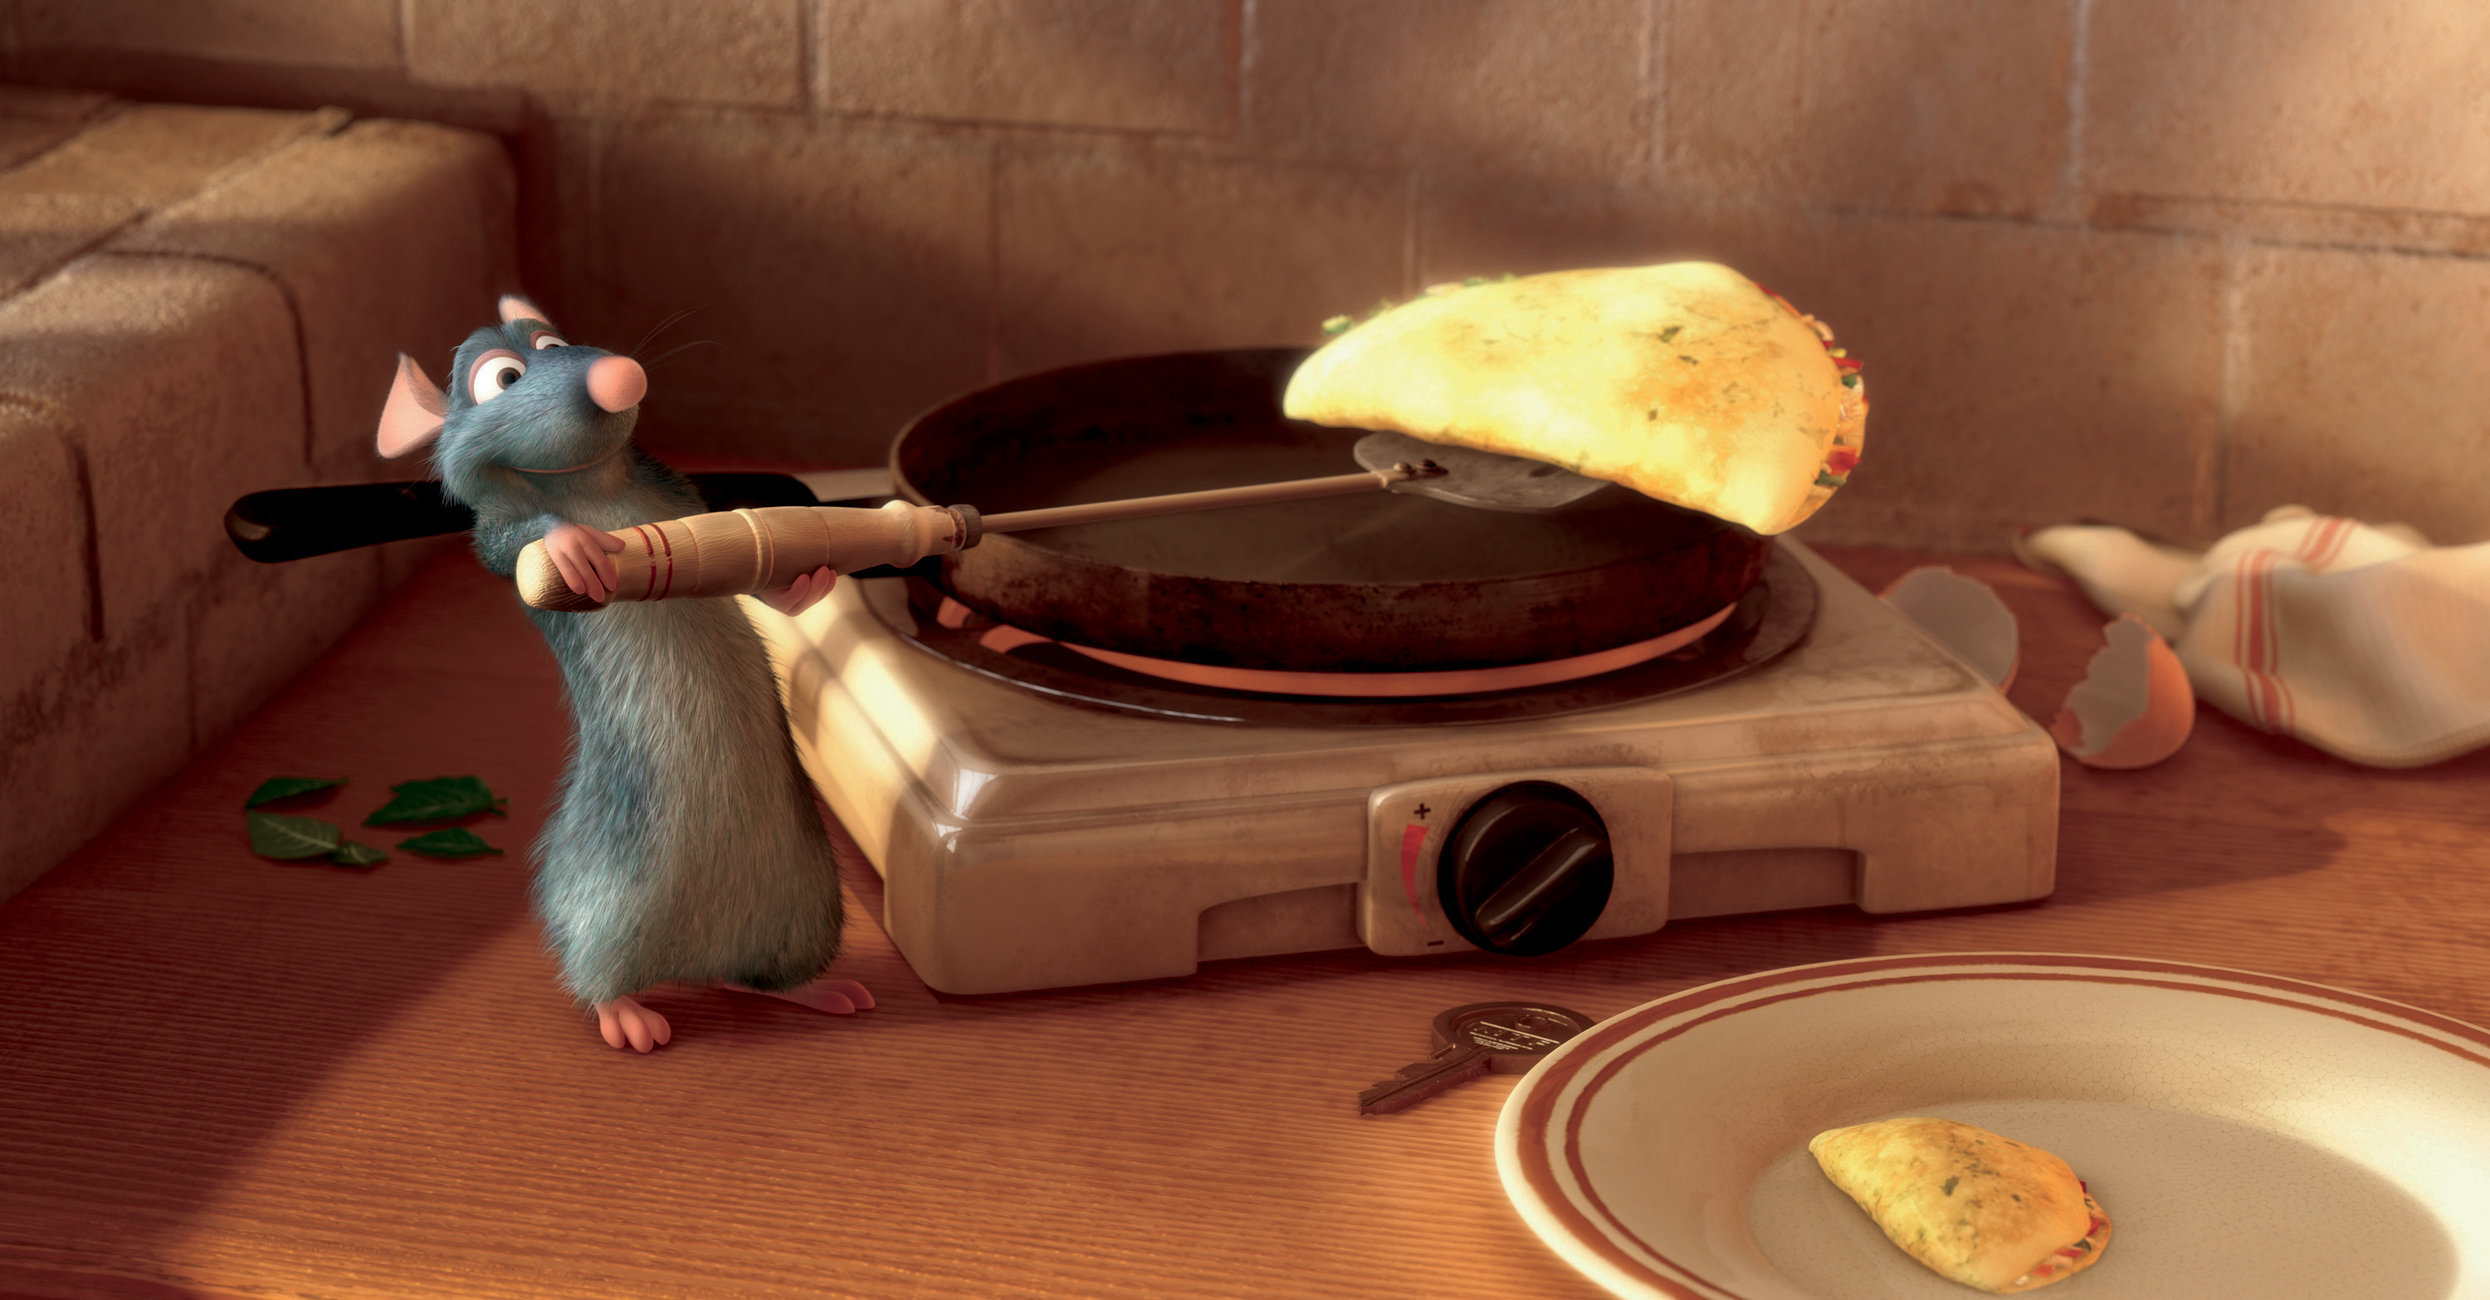 Animação da Pixar usa a fantasia para refletir sobre preconceitos - Verso -  Diário do Nordeste